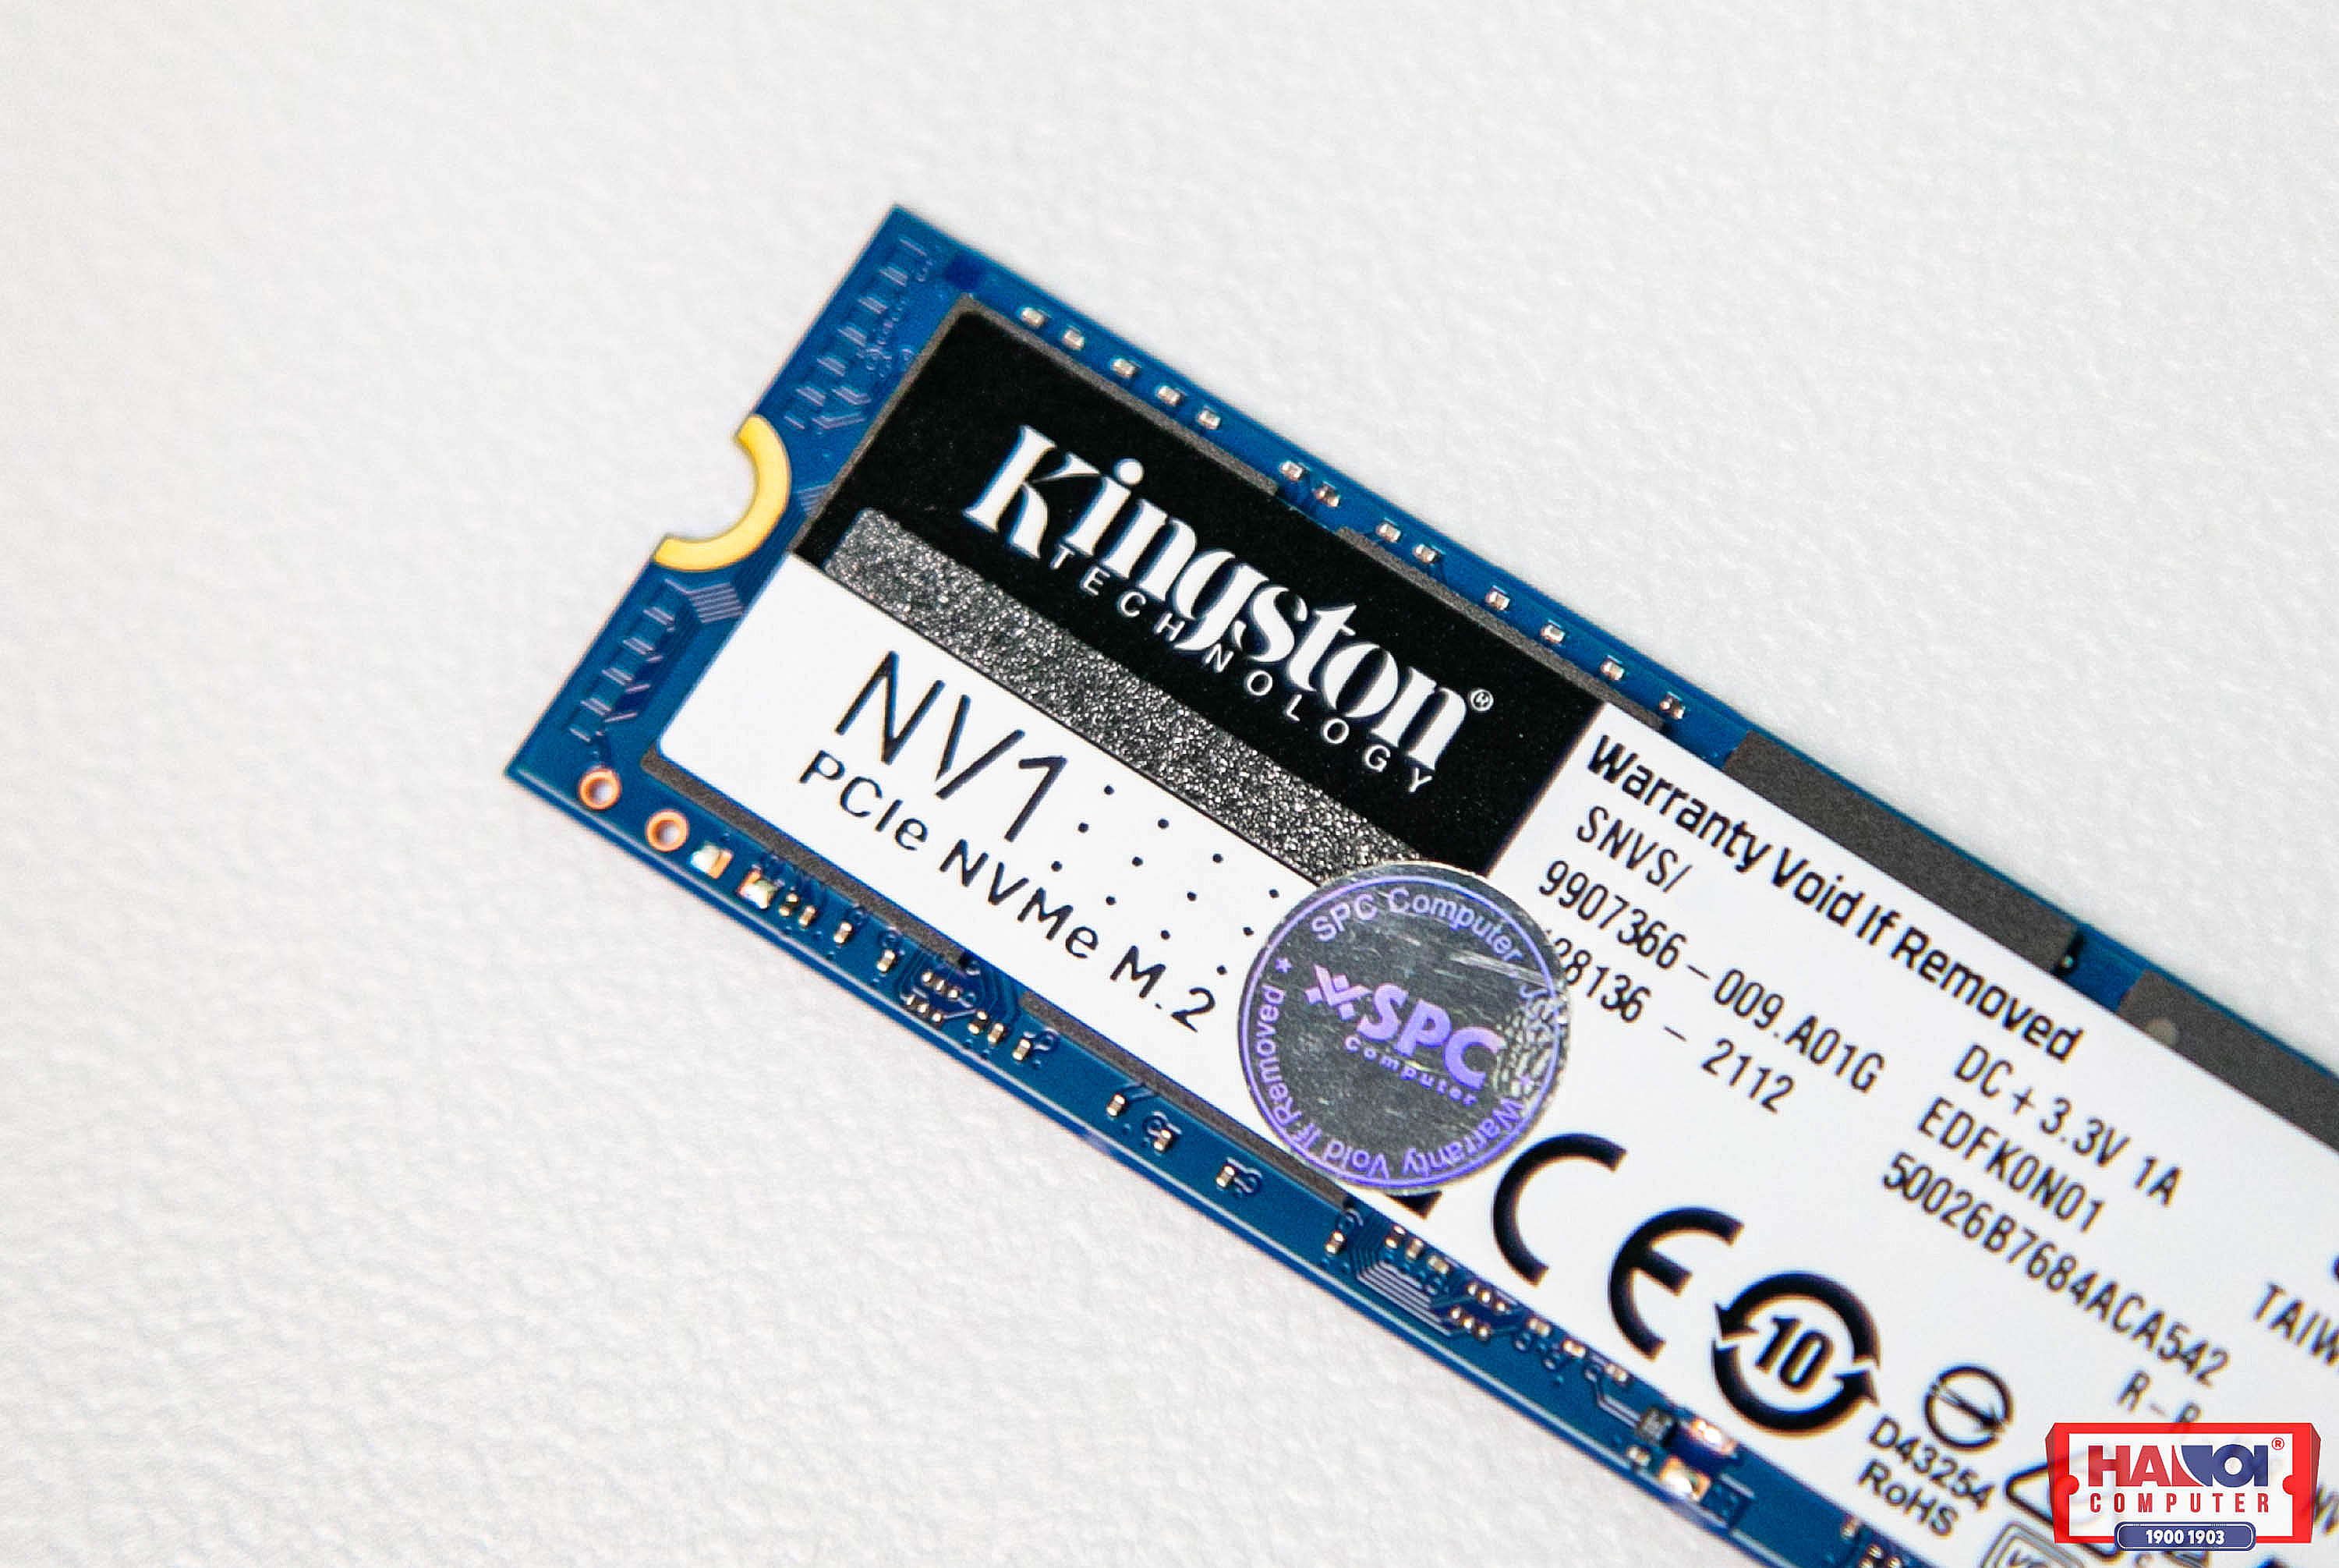 Ổ cứng SSD Kingston SNVS 500G NVMe M.2 2280 PCIe Gen 3 x 4